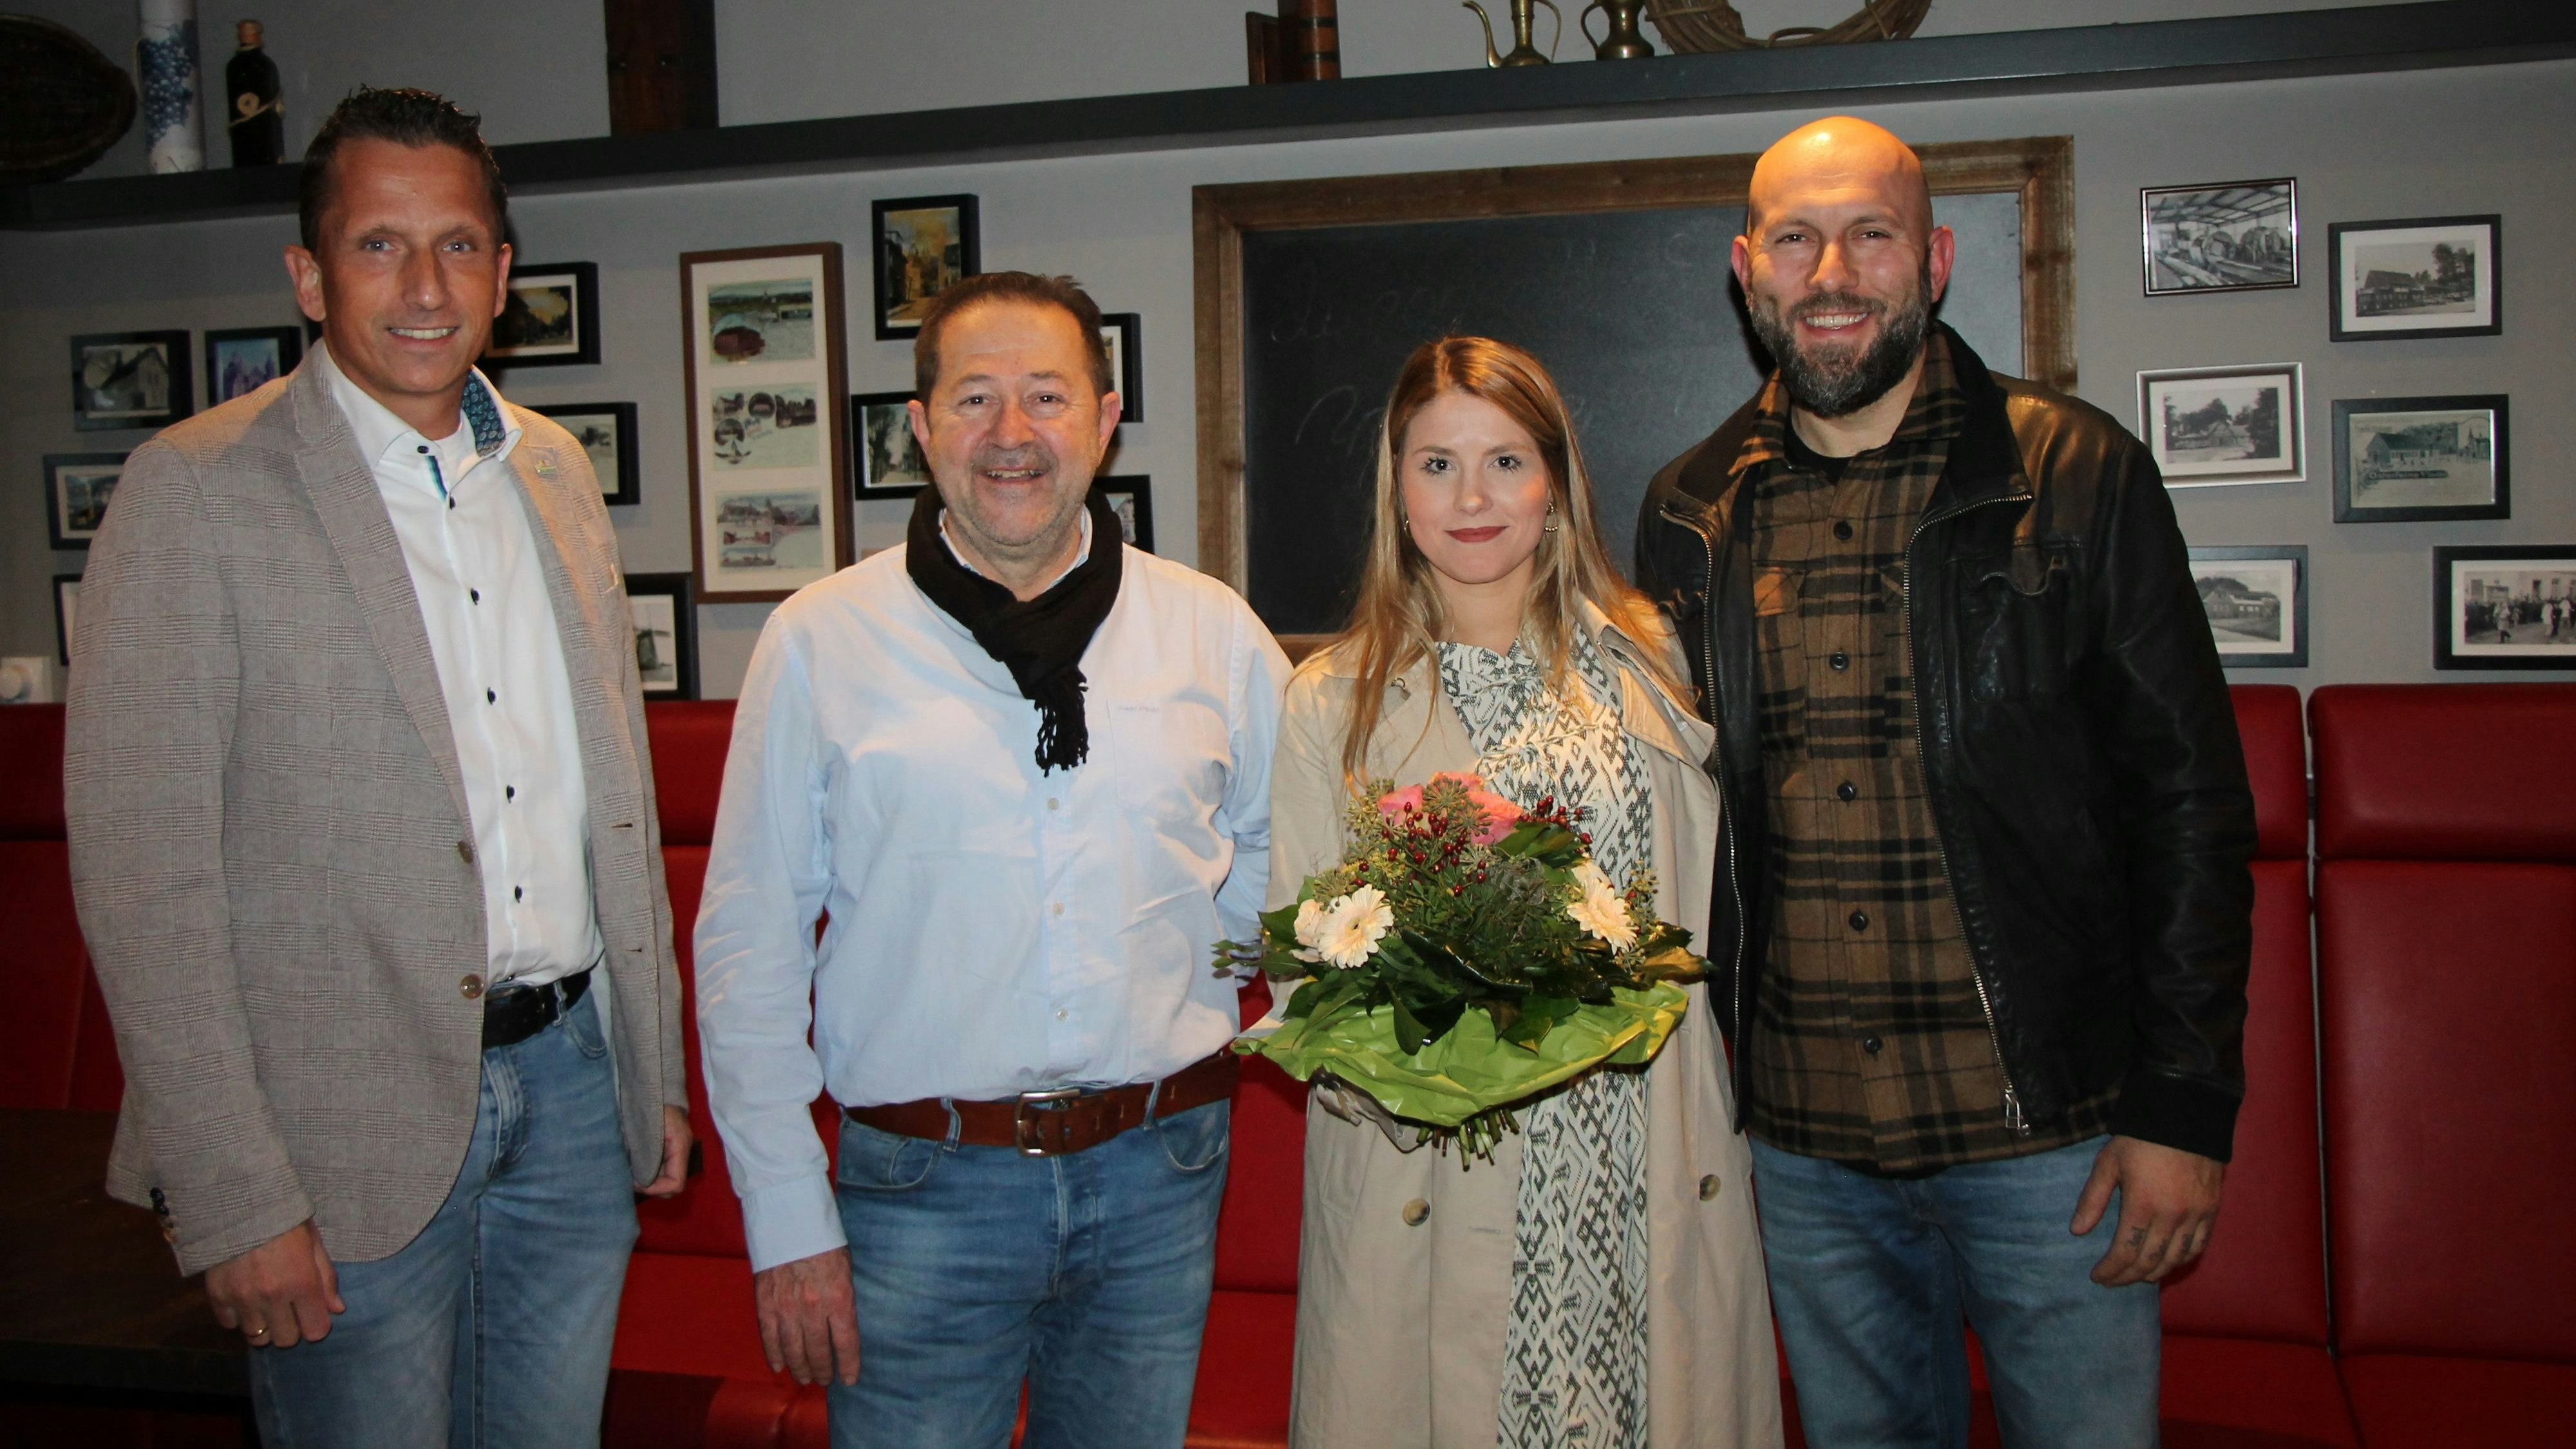 Abschied und Neuanfang zugleich: Bürgermeister Mike Otte (links) bedankte sich bei Fabienne Henke und Denis Cerovec und wünschte Petros Christodoulou (2.v.l.) viel Erfolg. Foto: Oevermann